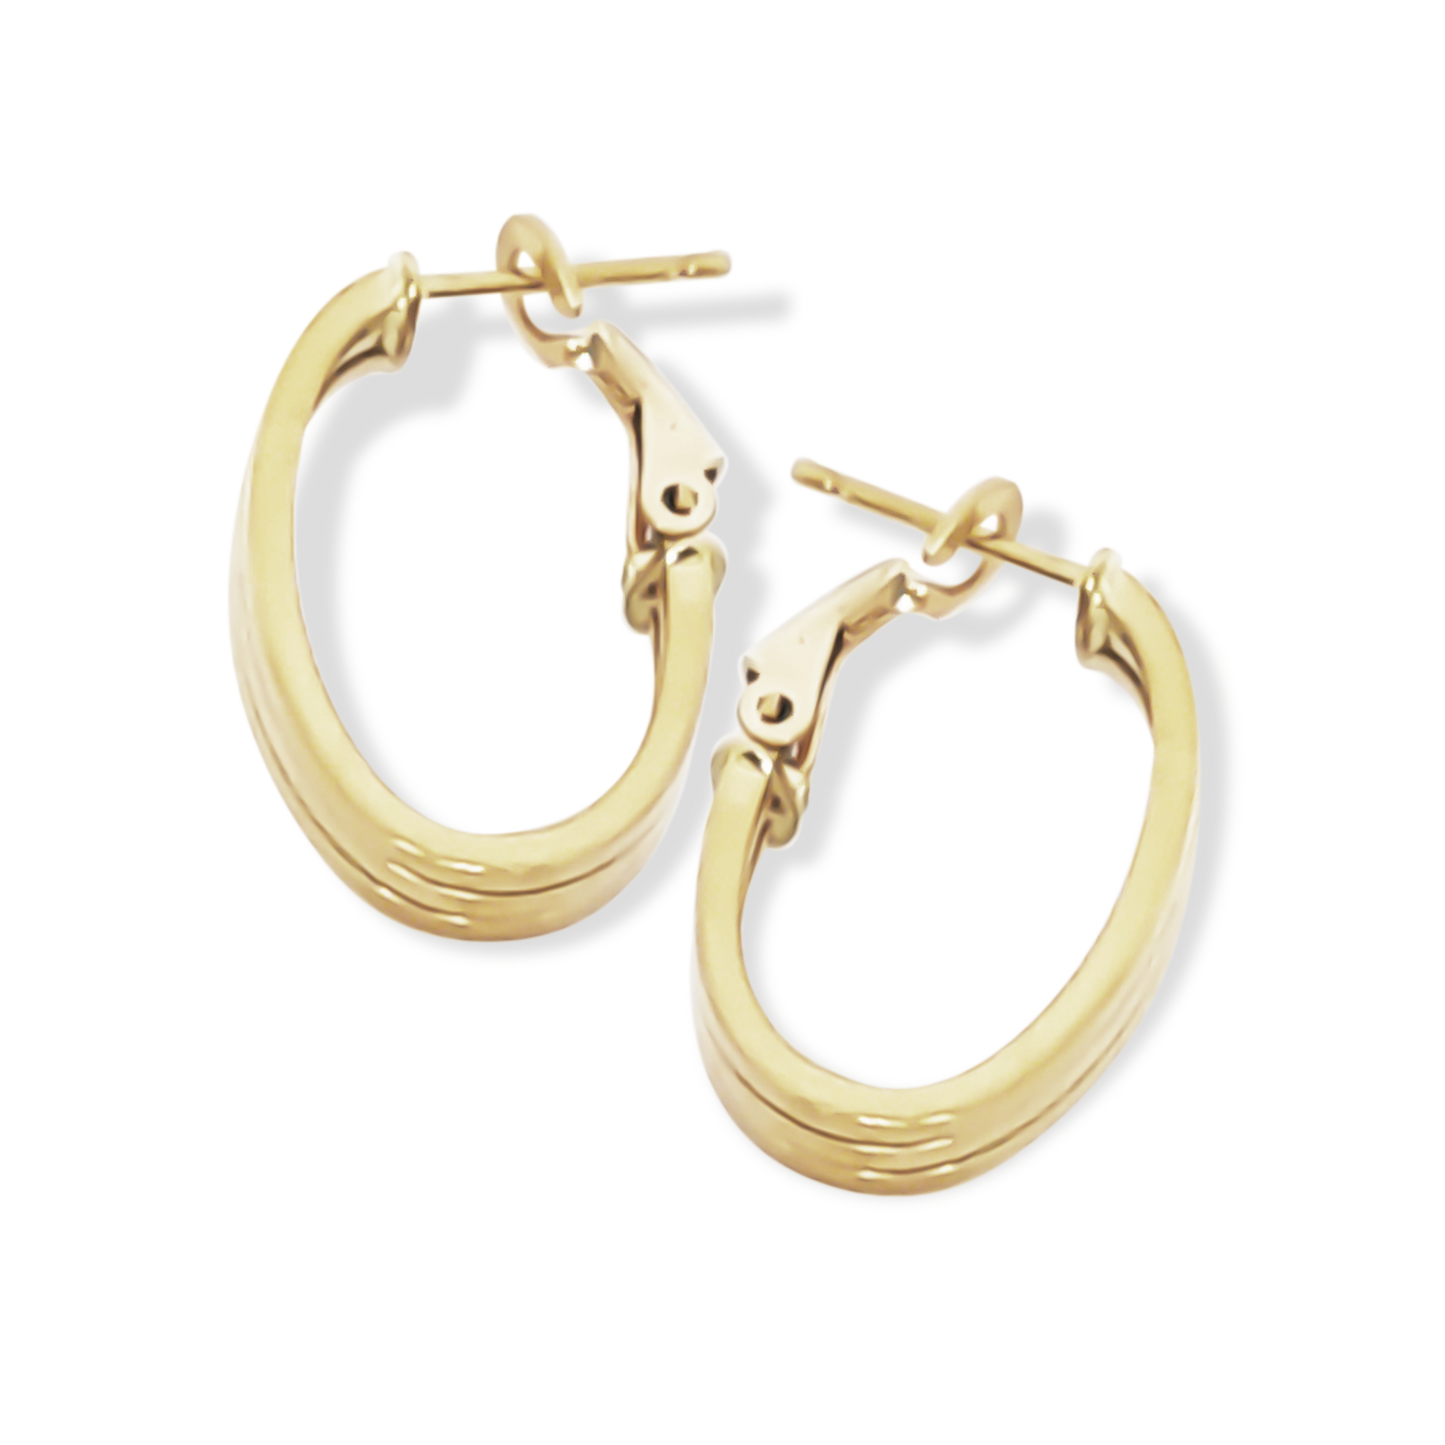 23mm Oval Stroke Flat Hoop Earrings in 9ct Yellow Gold